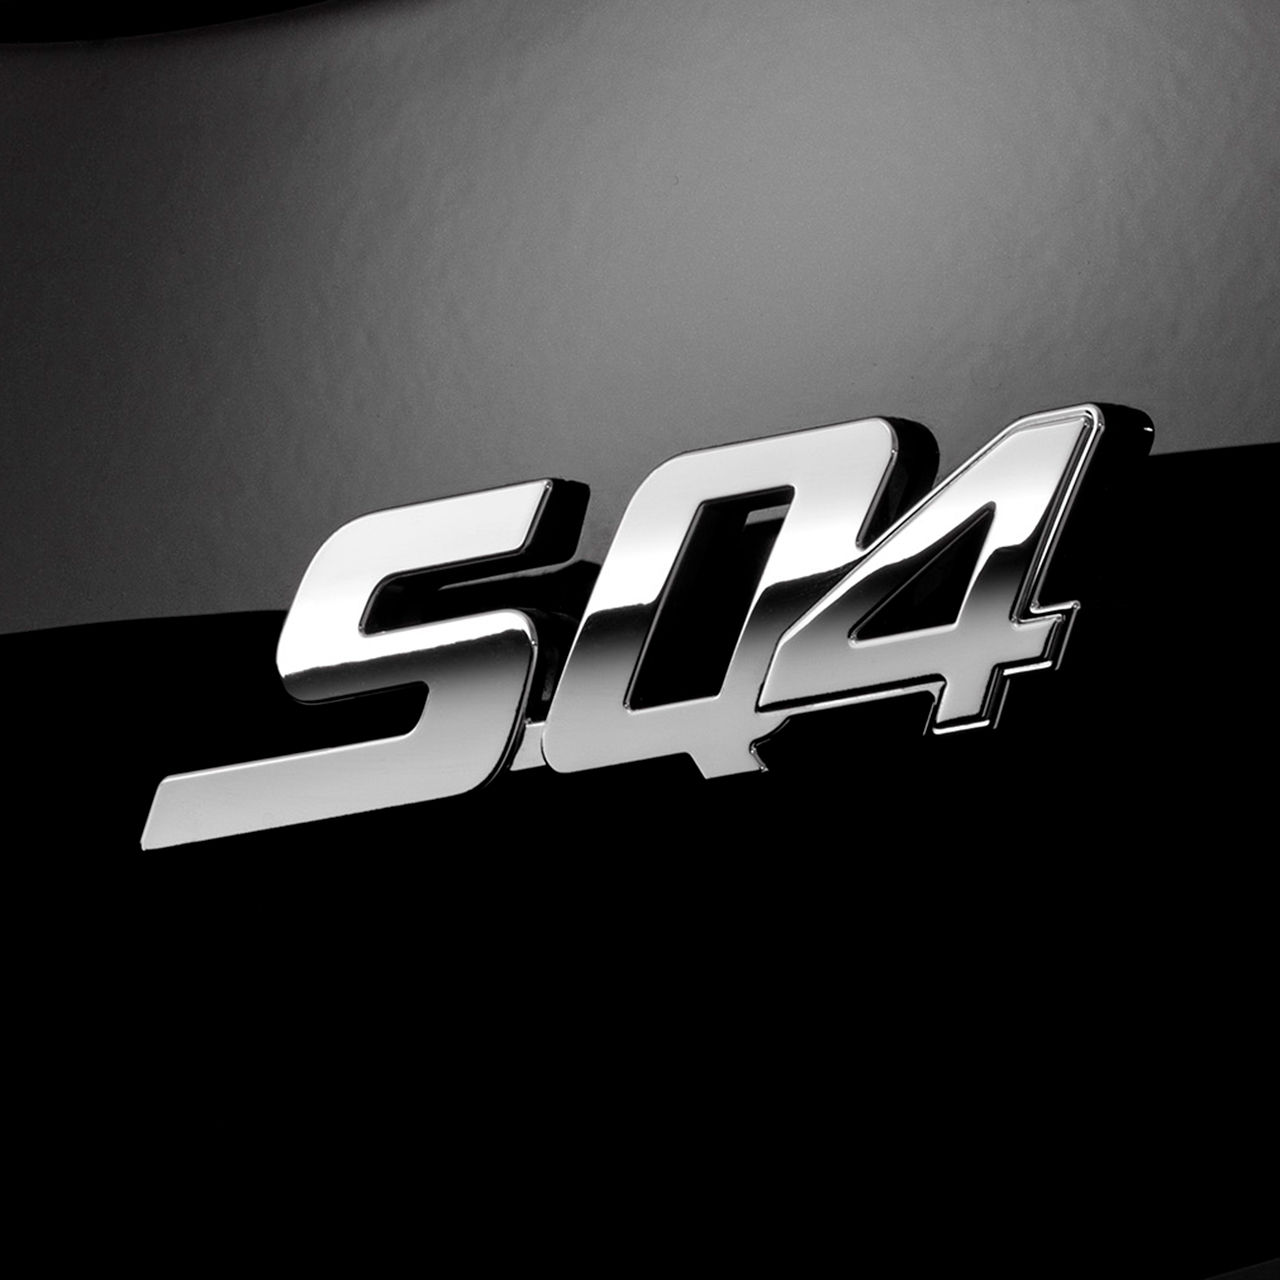 Logo SQ4 del sedán Maserati Quattroporte